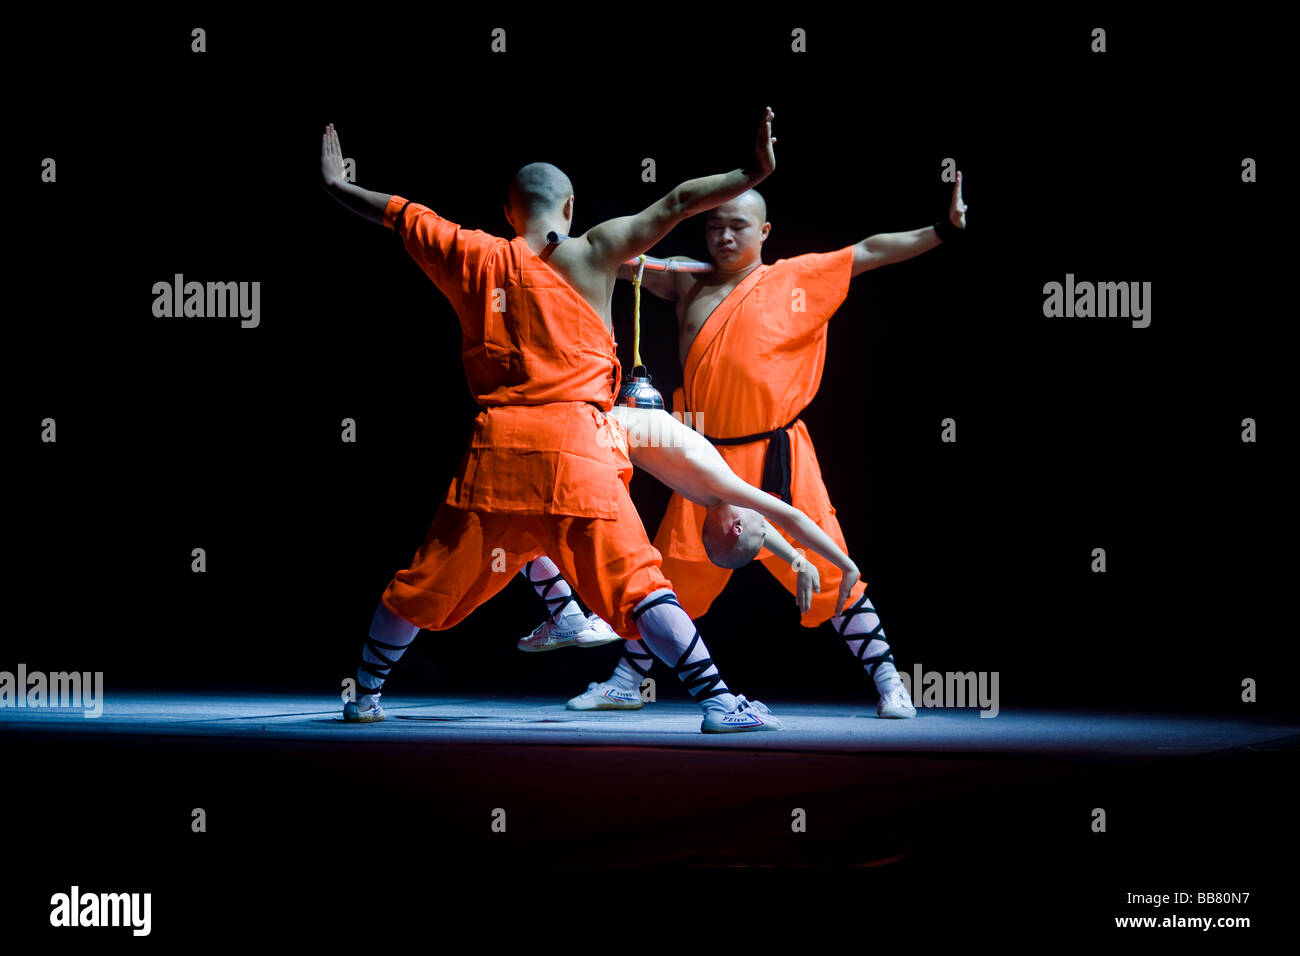 Konzentration ist das Vakuum in der Glasglocke, so dass das Kind auf dem Seil, Shaolin Mönche während einer Show hängen mitzuhalten. Stockfoto